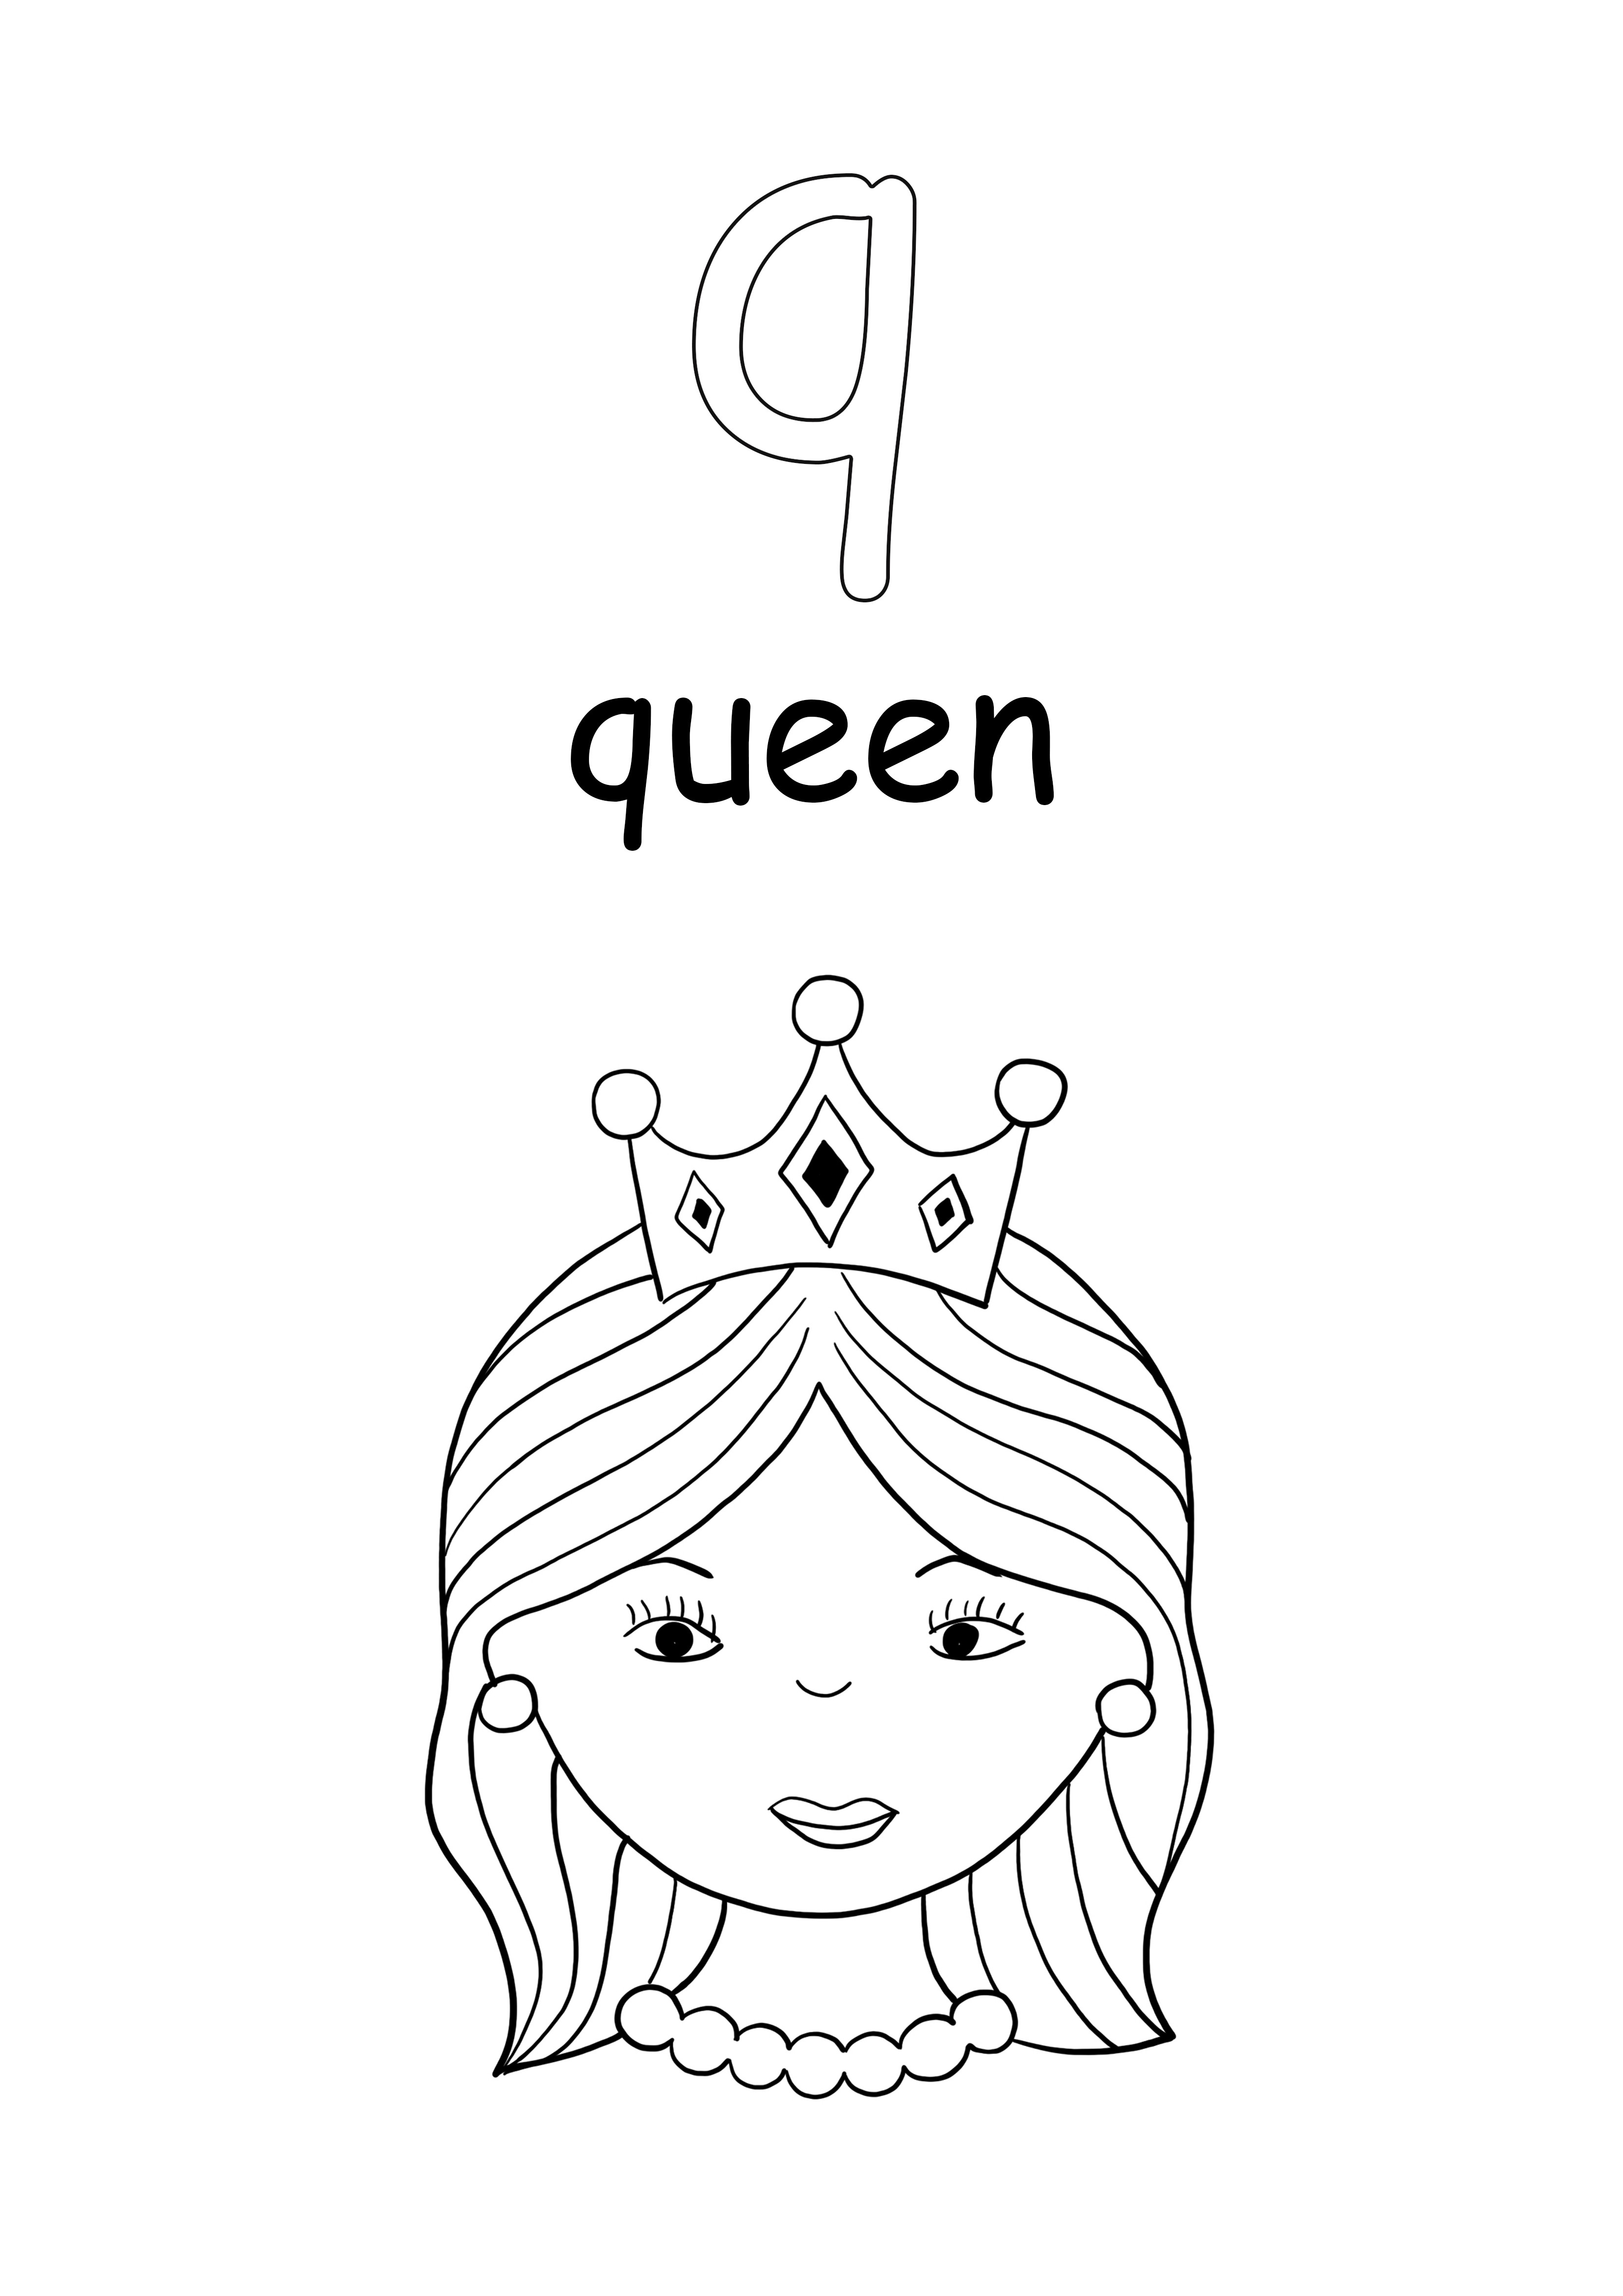 Małe słowo królowa i litera q kolorowanie i pobieranie za darmo